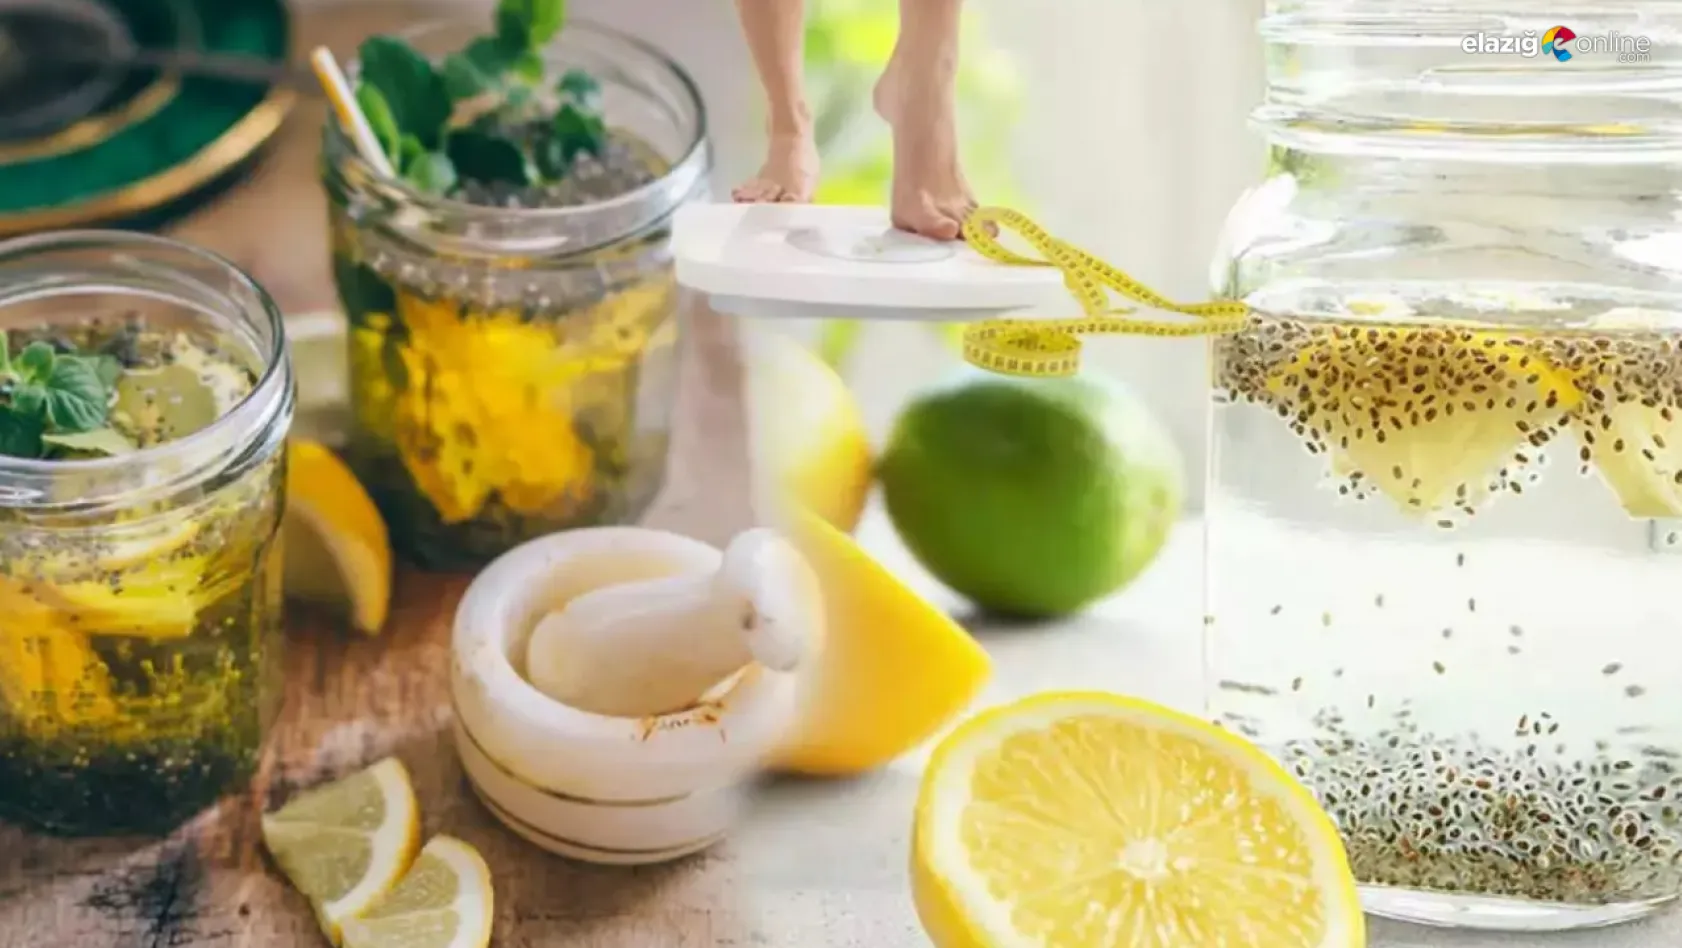 Sağlıklı kilo vermenin adım adım formülü! Chia ve limon detoks tarifi